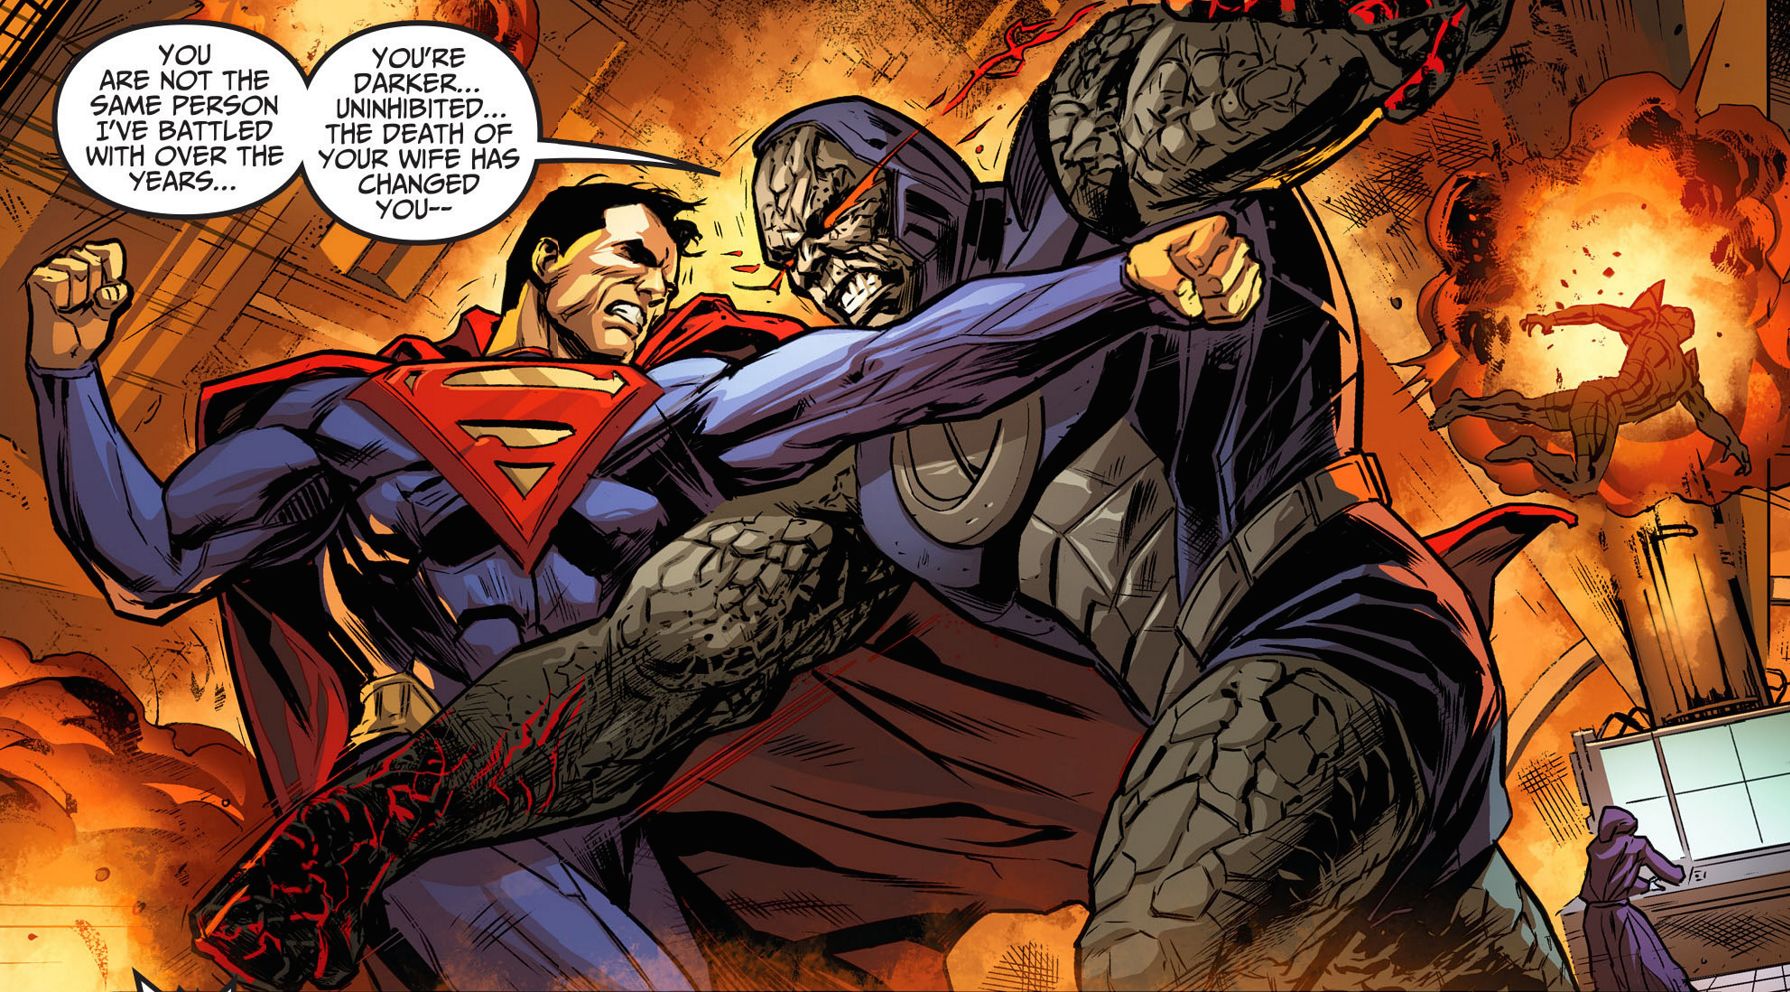 3. La Inteligencia y Fuerza de Darkseid es sobrehumana y superior a Thanos....